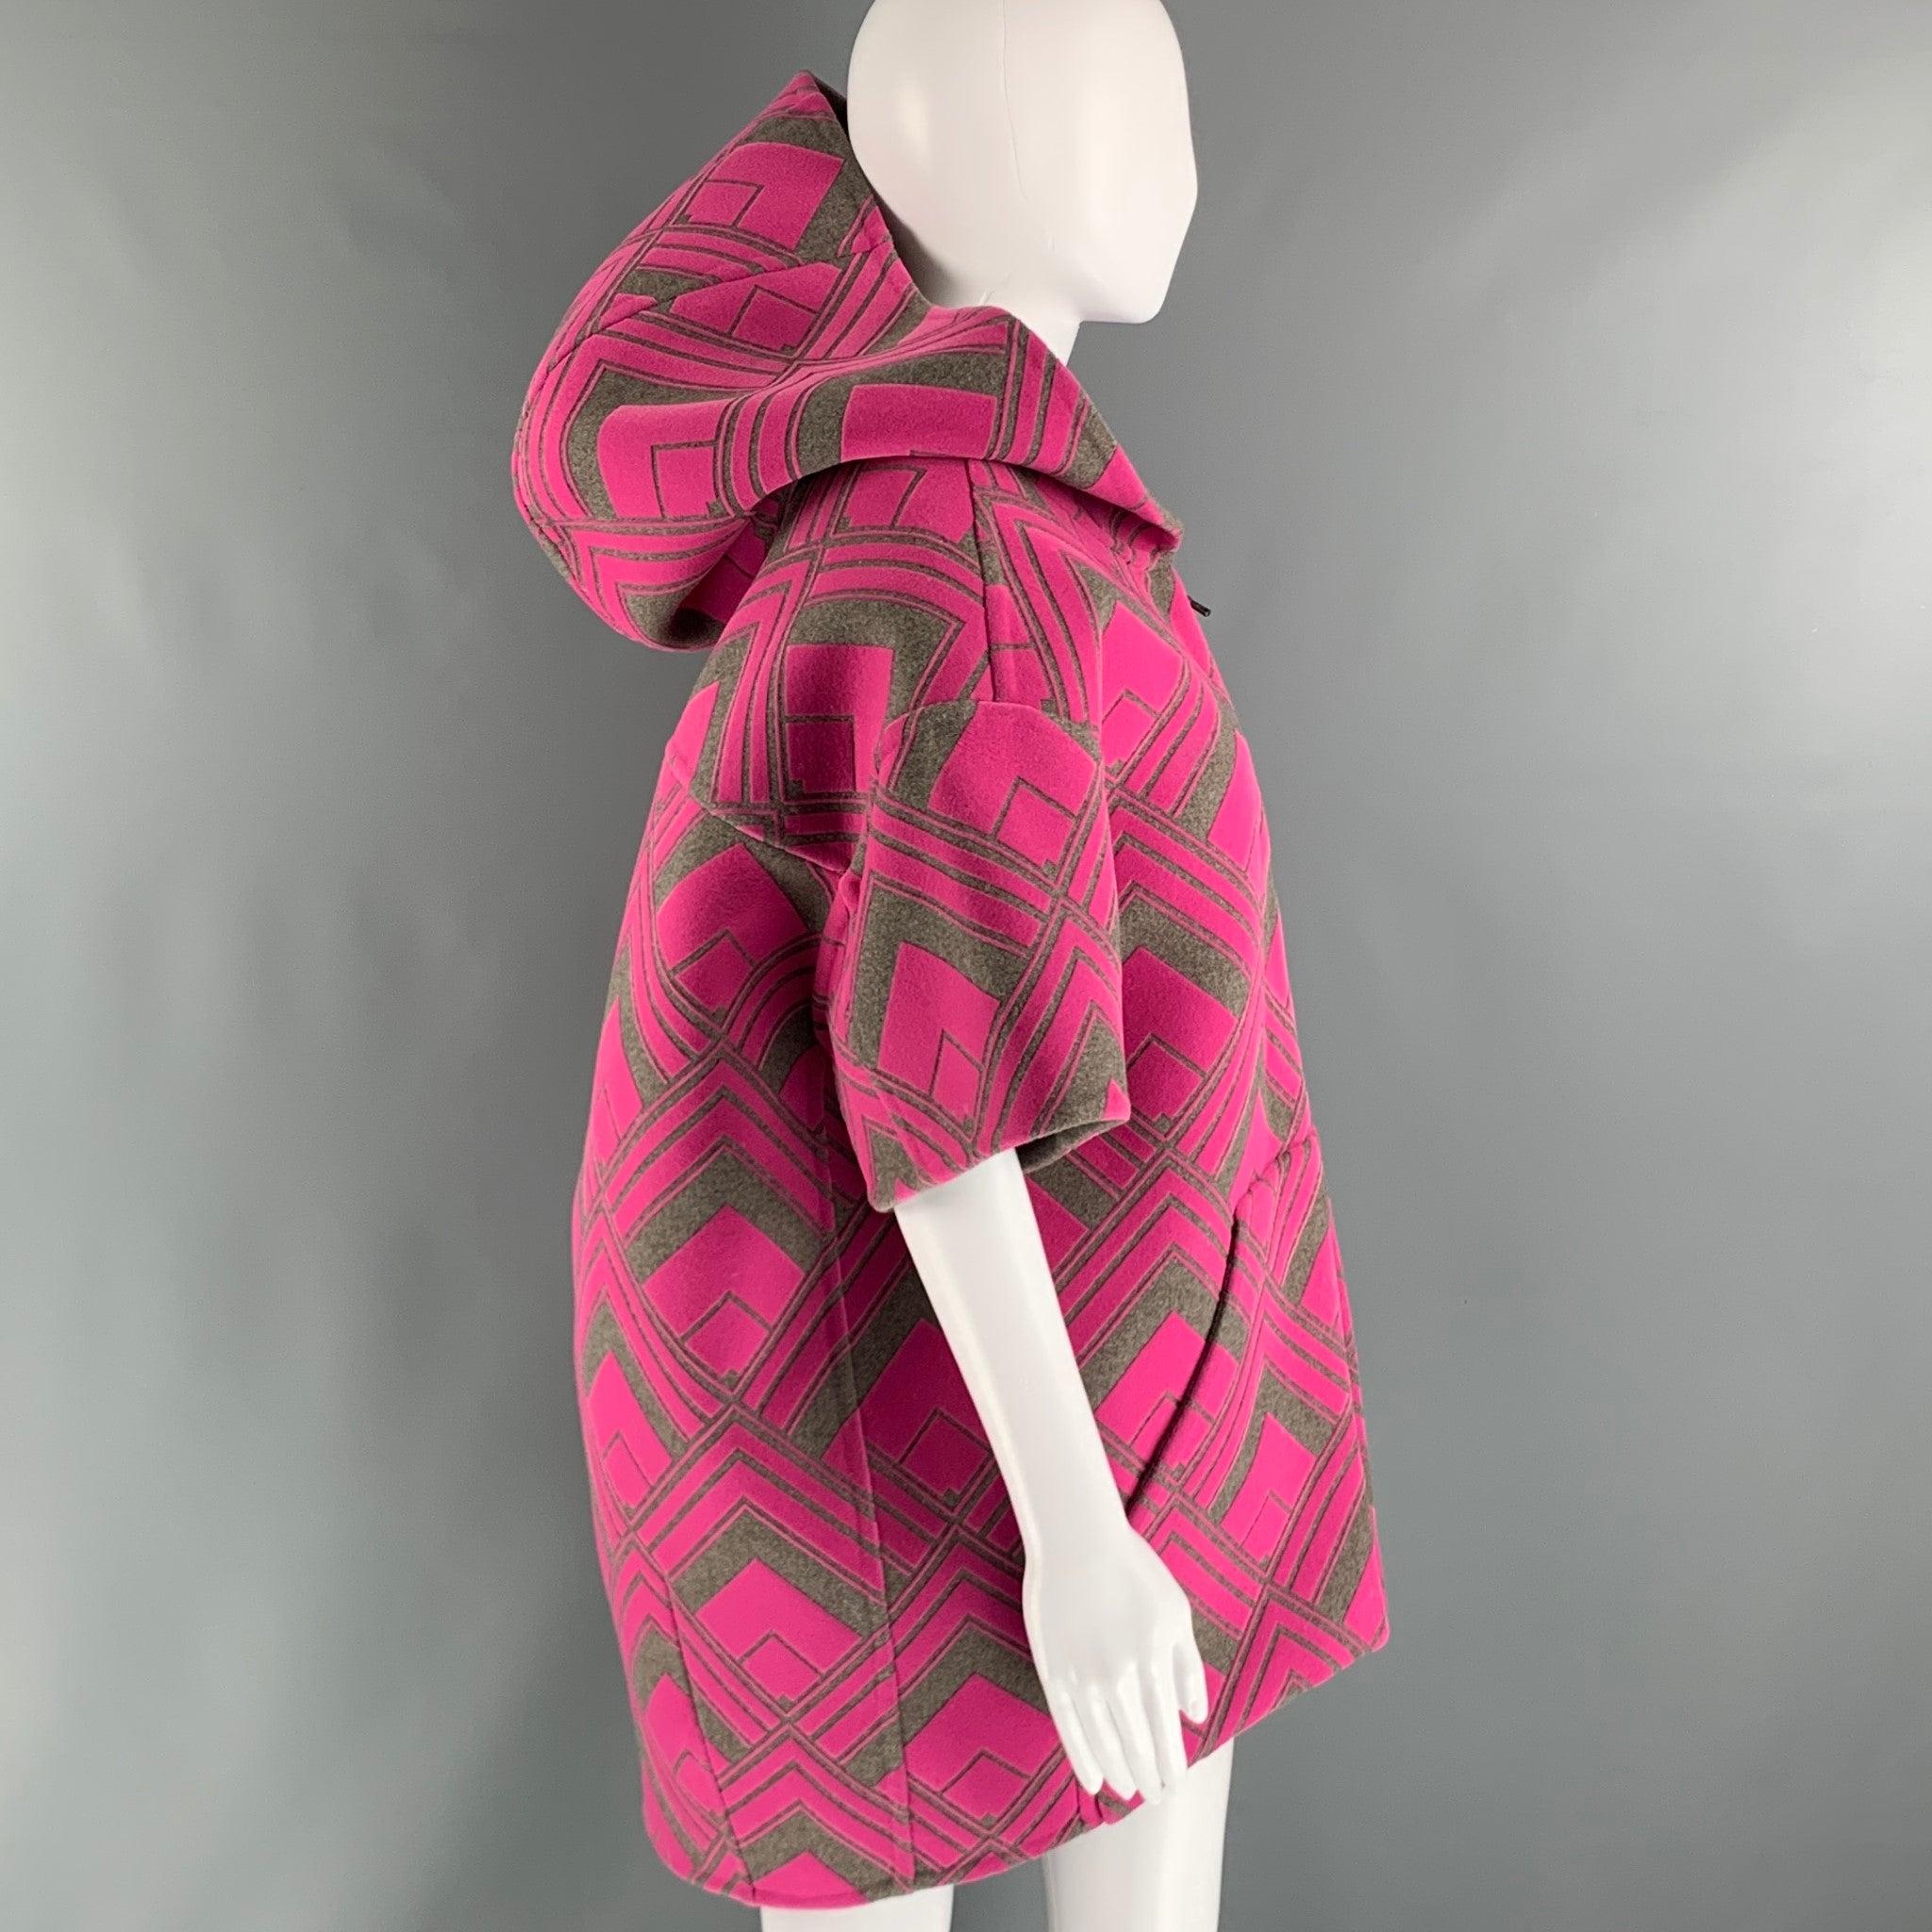 Le manteau MARC JACOBS RUNWAY 2021 est réalisé en molleton de laine à imprimé abstrait rose et taupe et présente un style à capuche et surdimensionné, des manches courtes, une veste matelassée amovible et une fermeture à glissière. Fabriqué aux